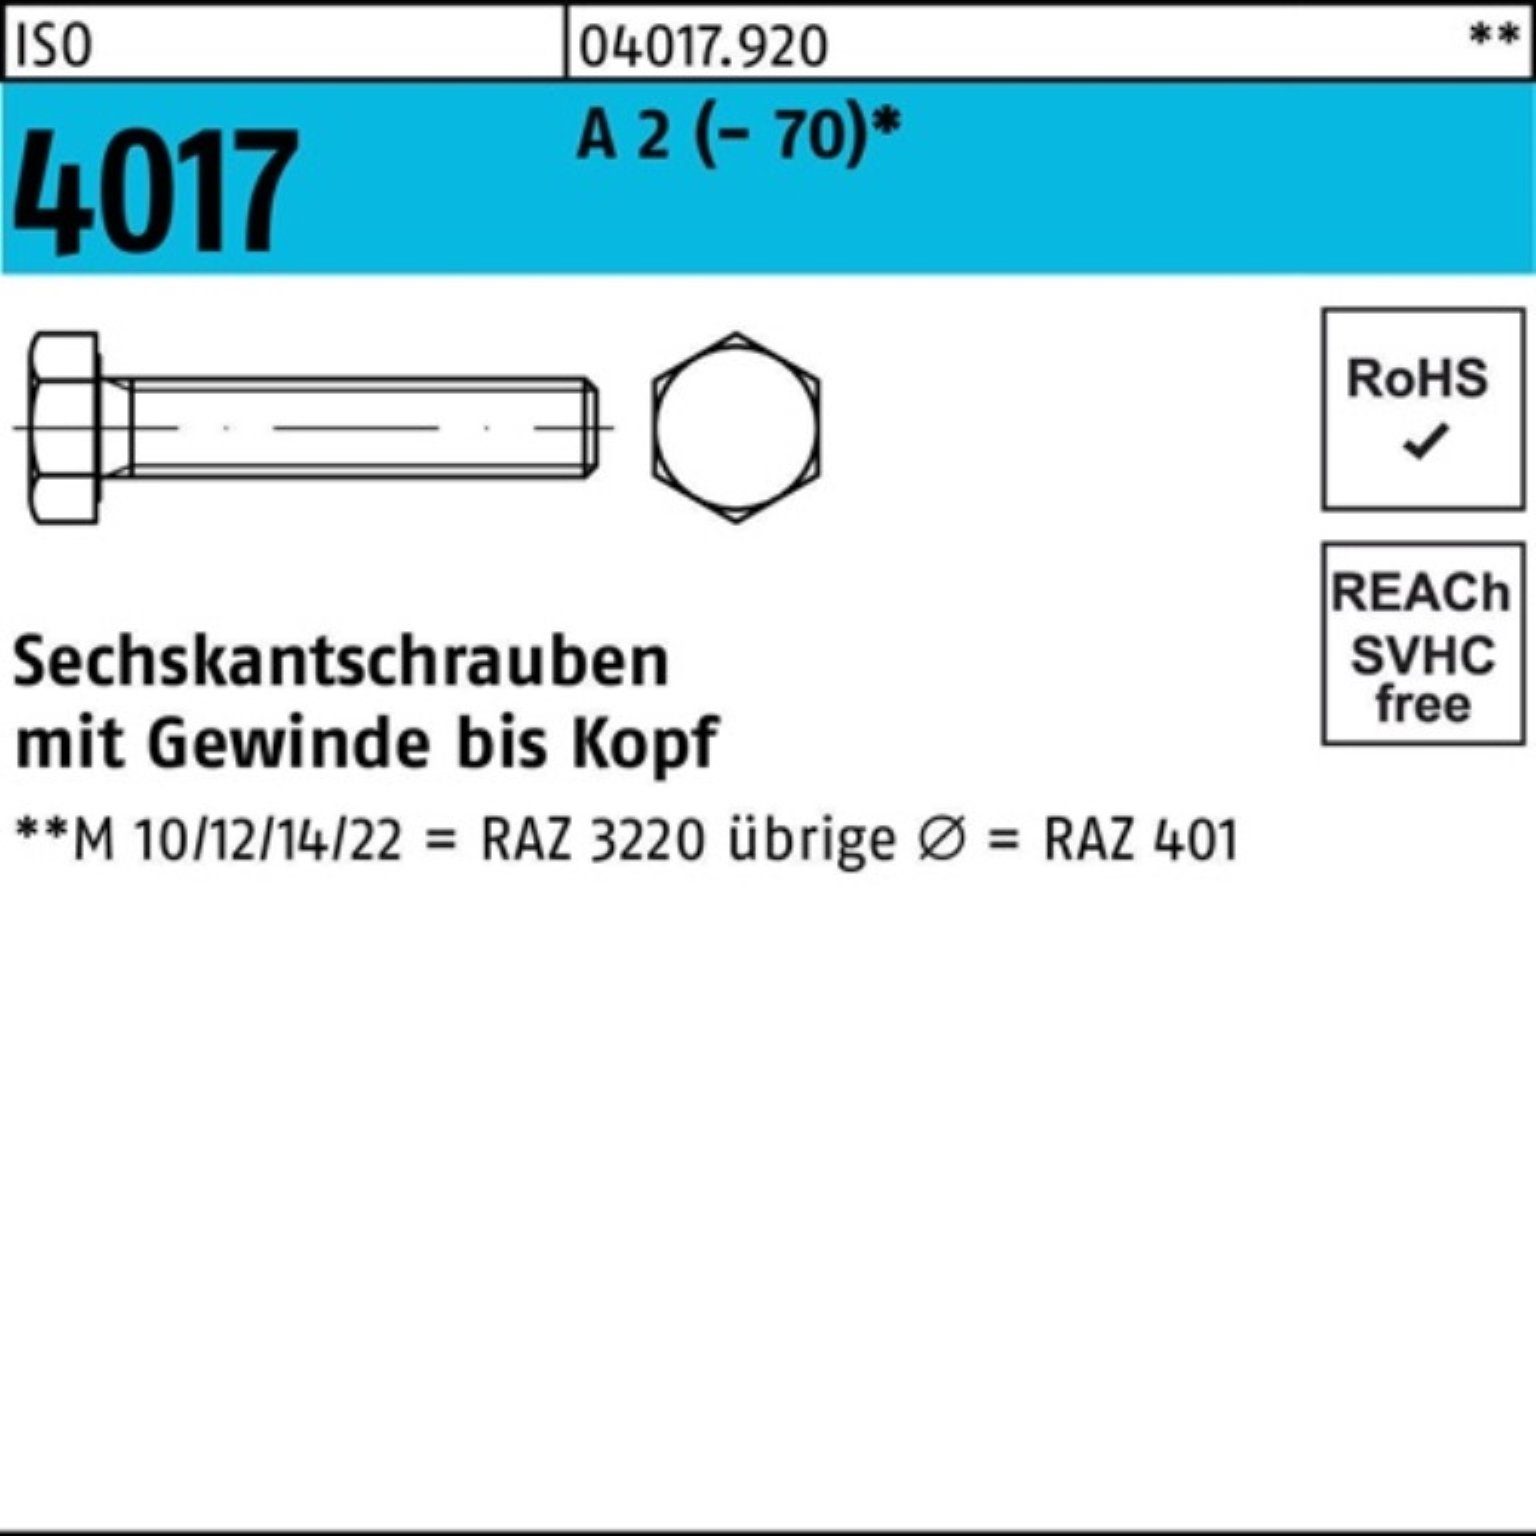 Bufab Sechskantschraube A 4017 VG (70) Sechskantschraube ISO 200 Pack 100er 2 M16x Stück 10